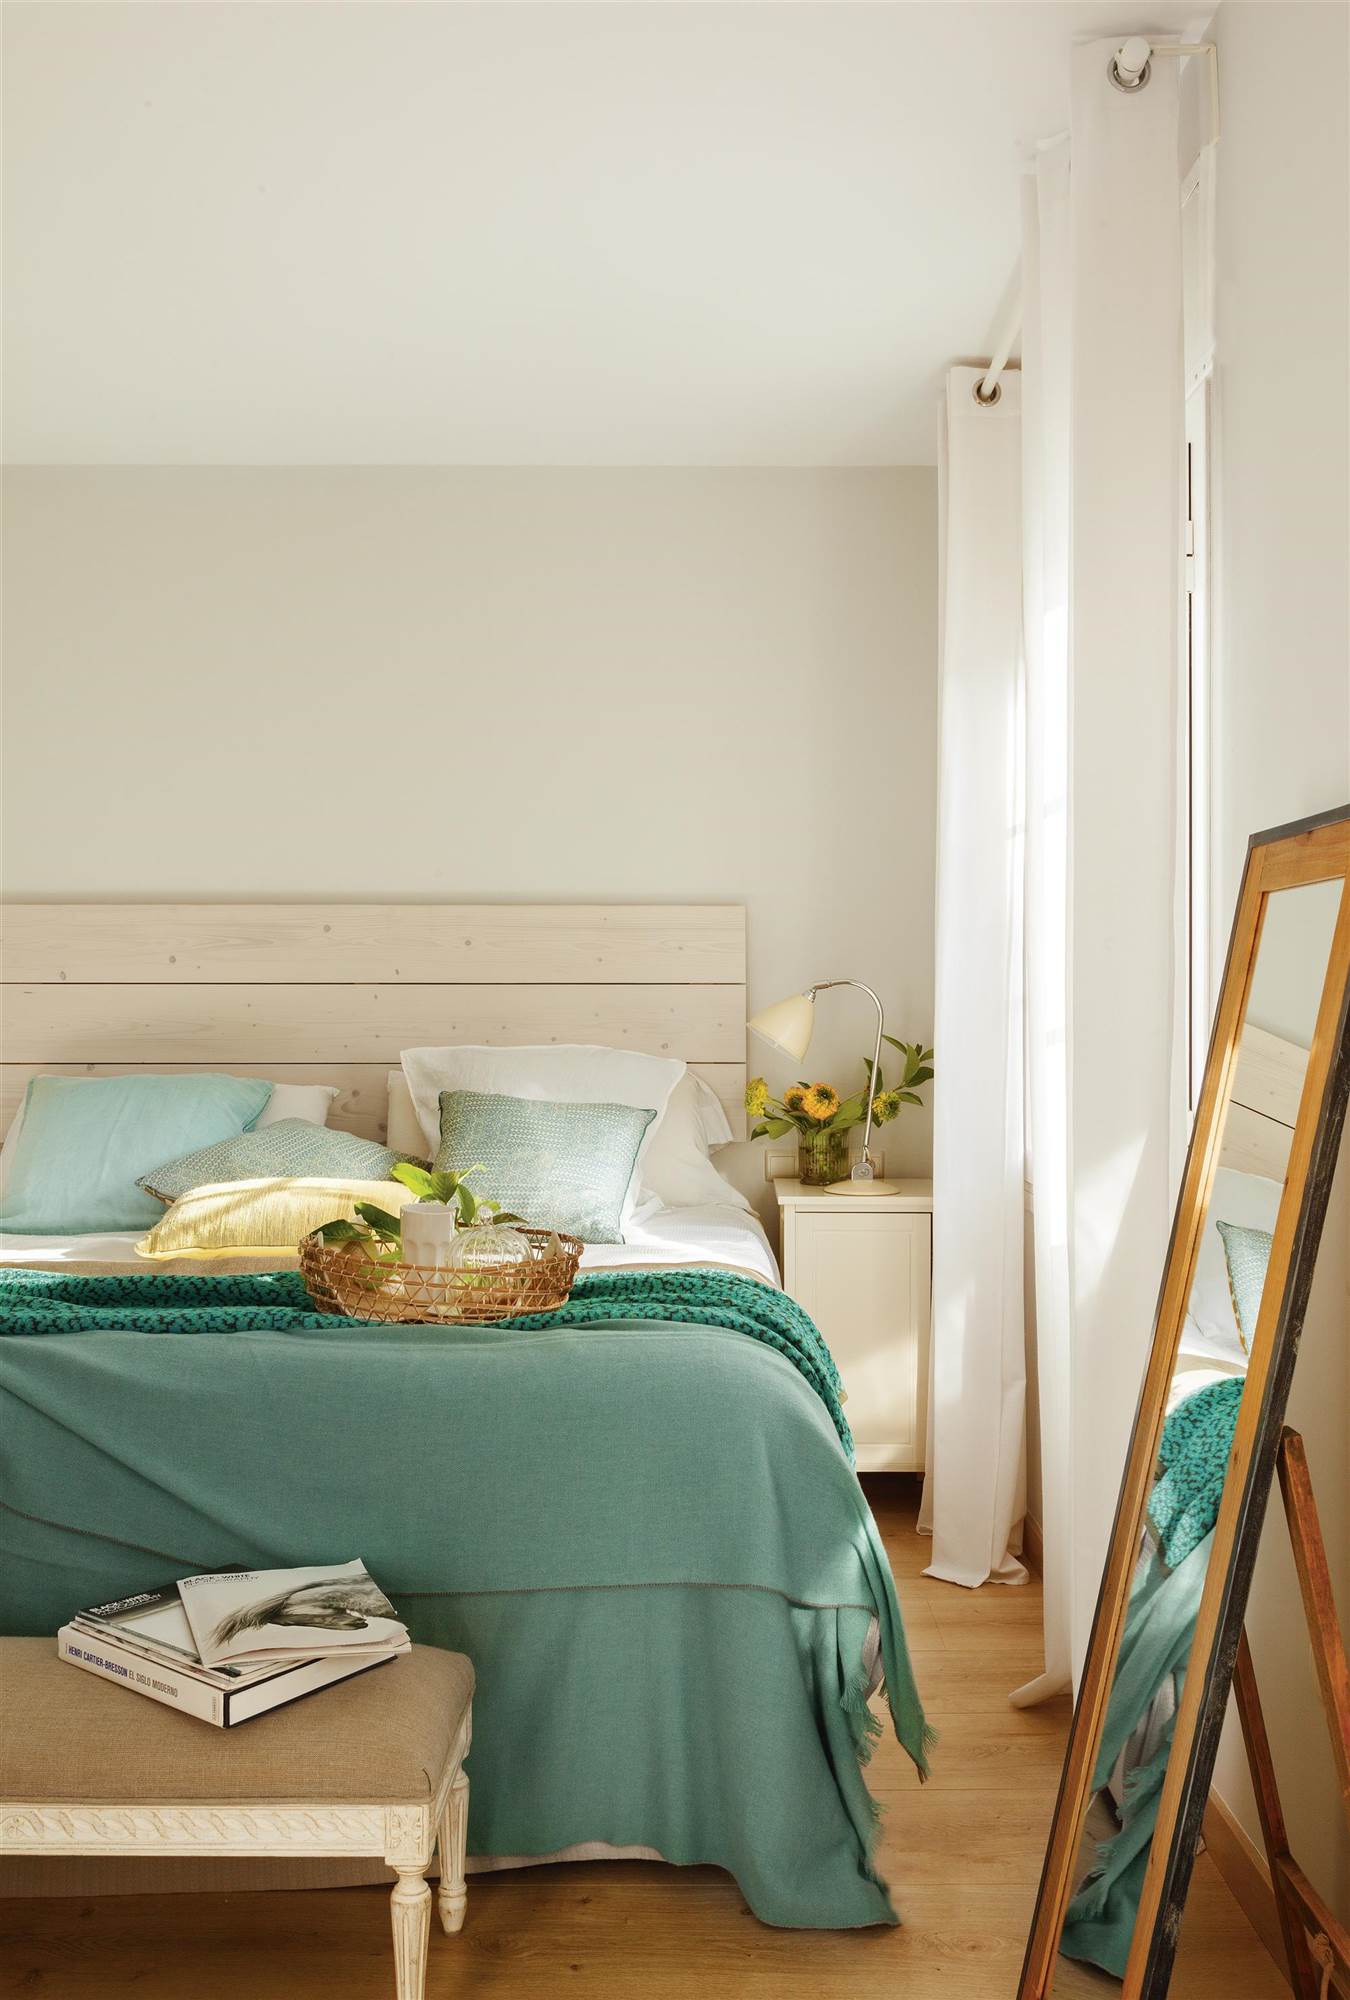 Dormitorio moderno con rooa de cama de color verde.